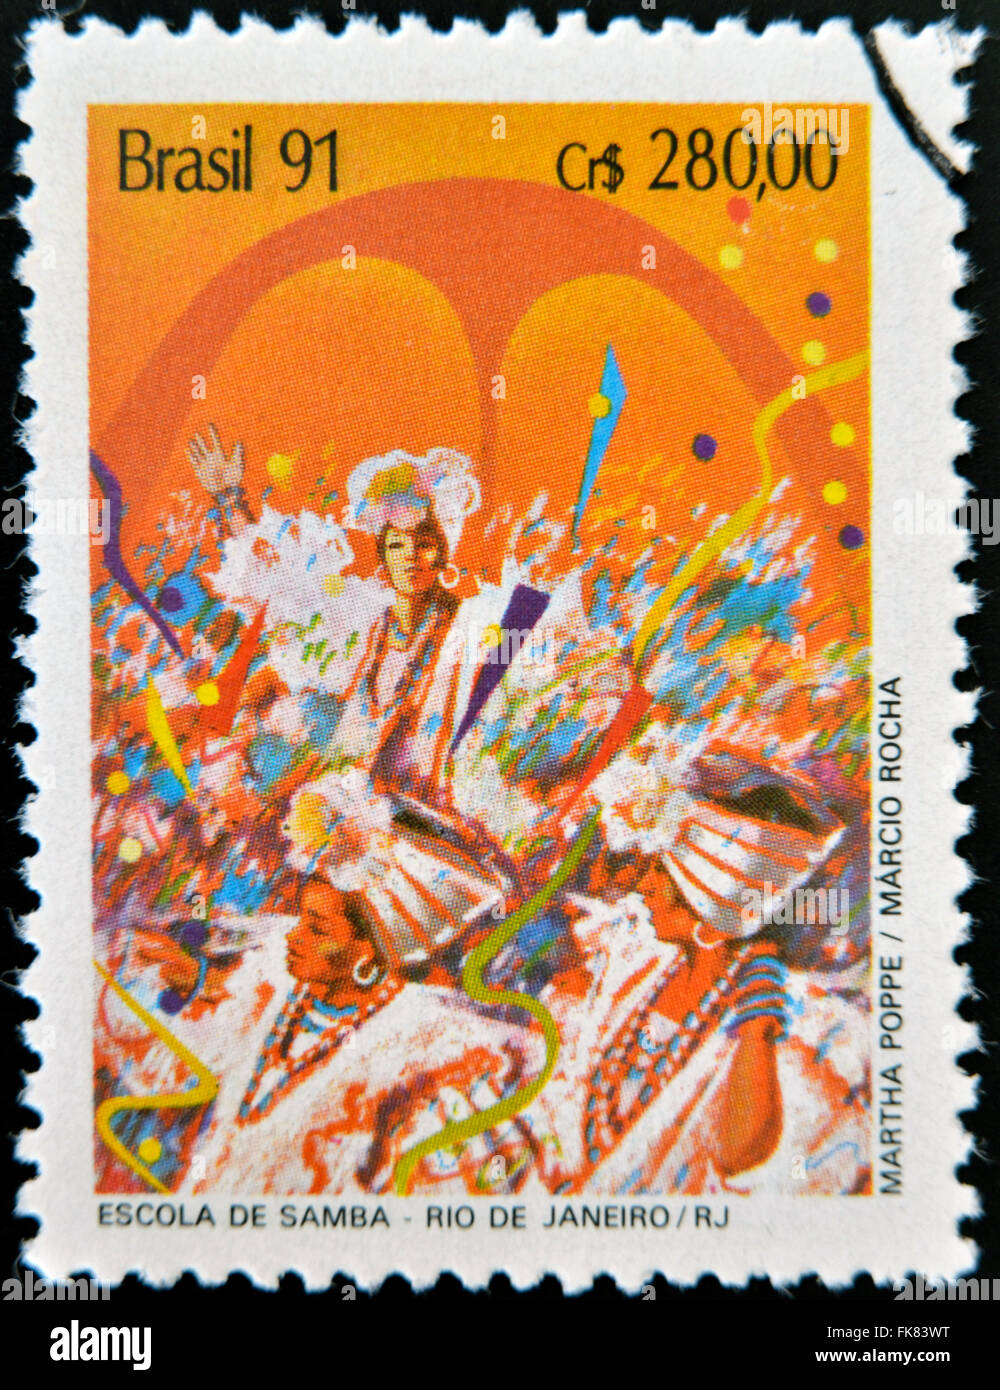 Brésil - circa 1991 : timbre imprimé au Brésil montre l'école de samba à Rio de Janeiro, vers 1991 Banque D'Images